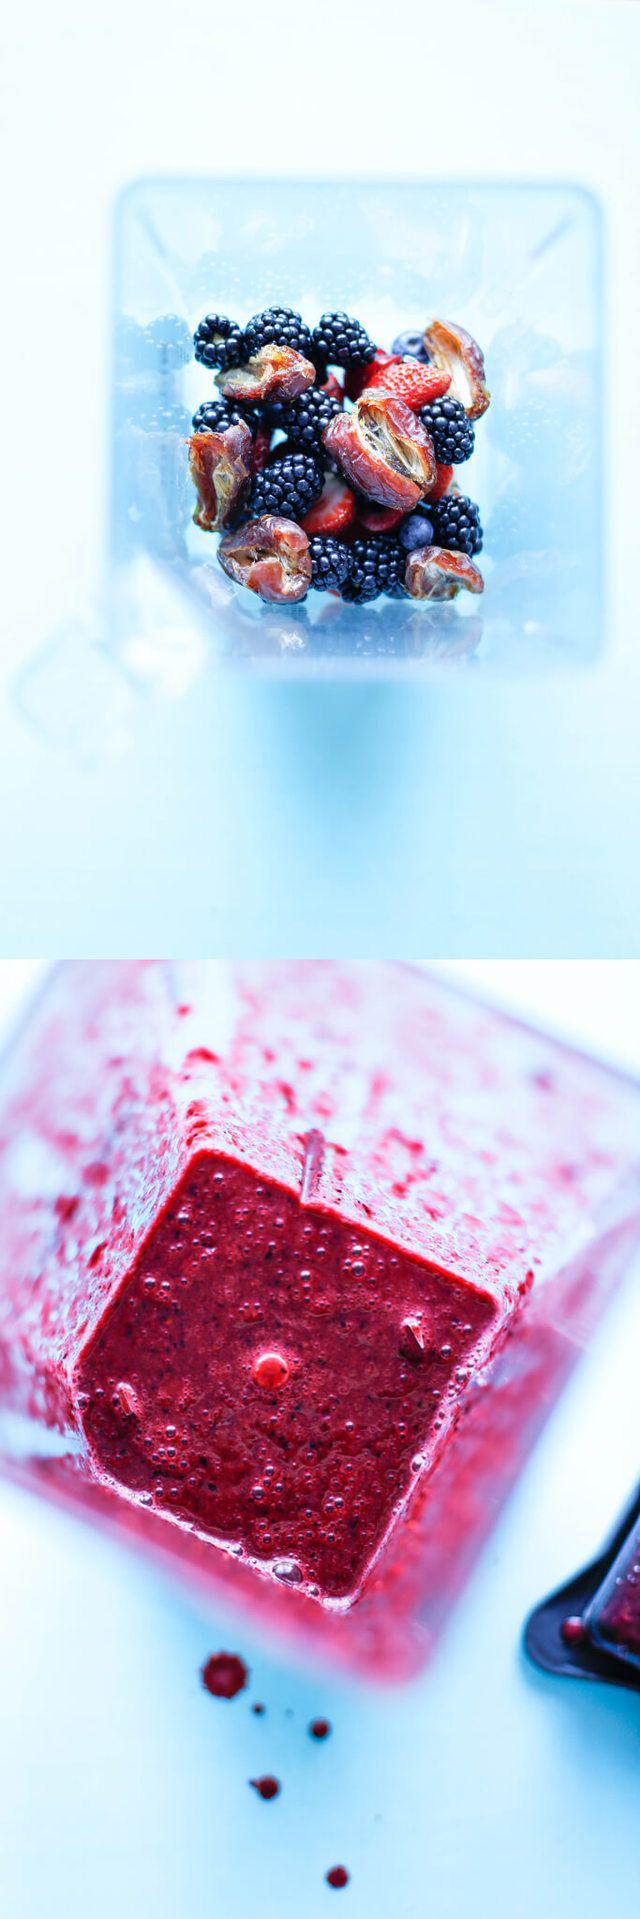 รูปภาพ:http://simplycrudelicious.com/wp-content/uploads/2016/08/Date-caramel-berry-sauce-ice-cream-topping-sweet-and-tart-delicious-summer-treats-recipe-dessert-blueberries-cherries-raspberries-strawberries-blackberries-glutenfree-nutfree-1.jpg